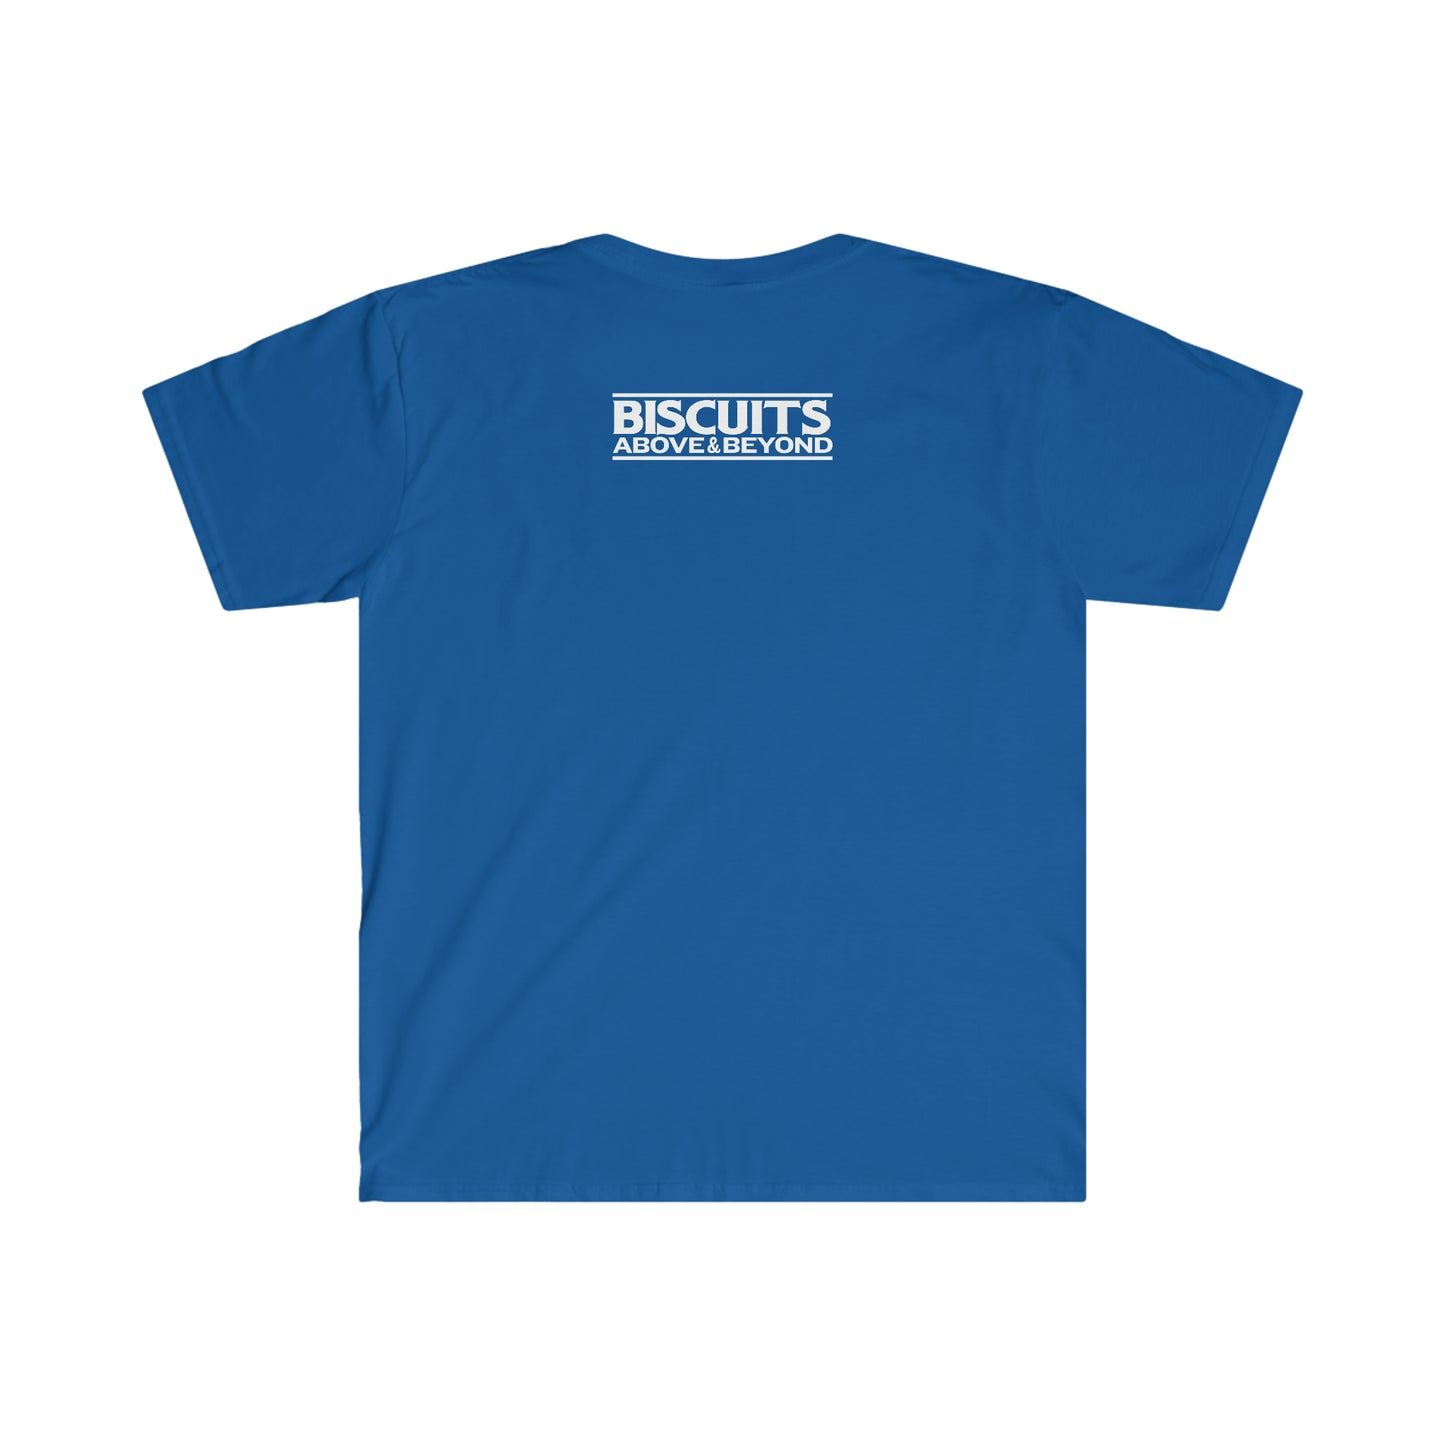 Shine at Rise - Unisex Softstyle T-Shirt - Royal Blue